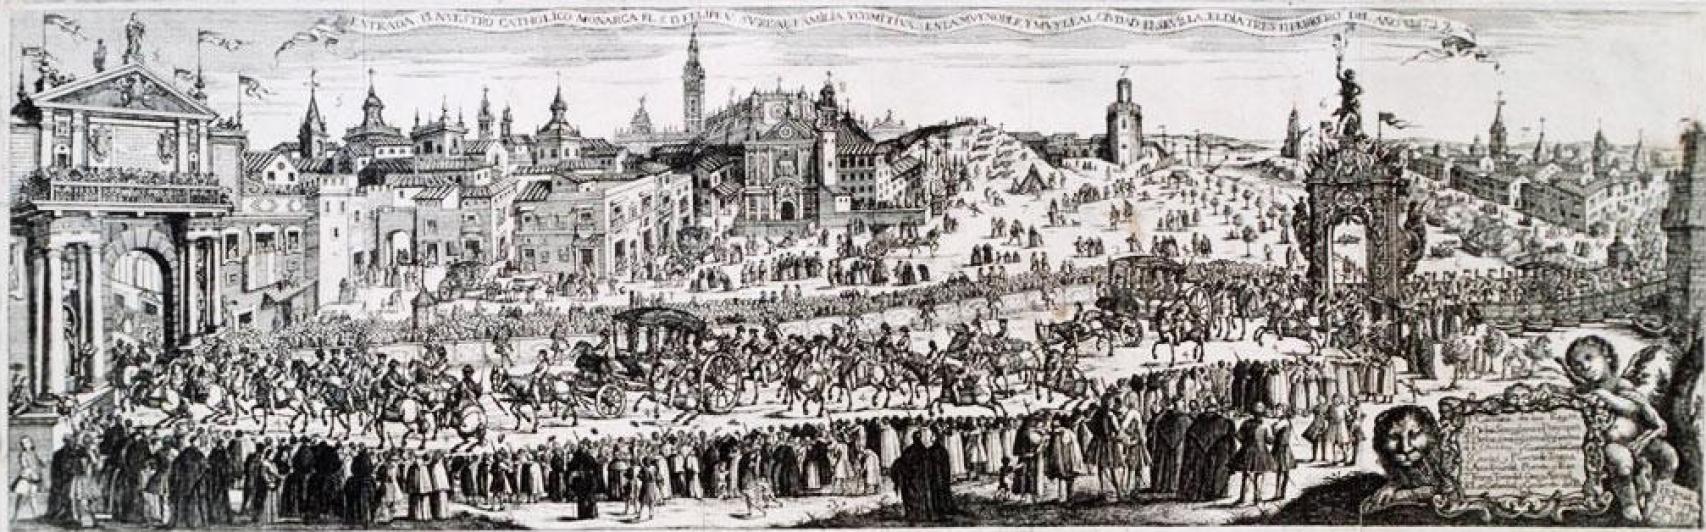 Entrada de Felipe V y su comitiva en Sevilla, según un grabado de Pedro Tortolero.